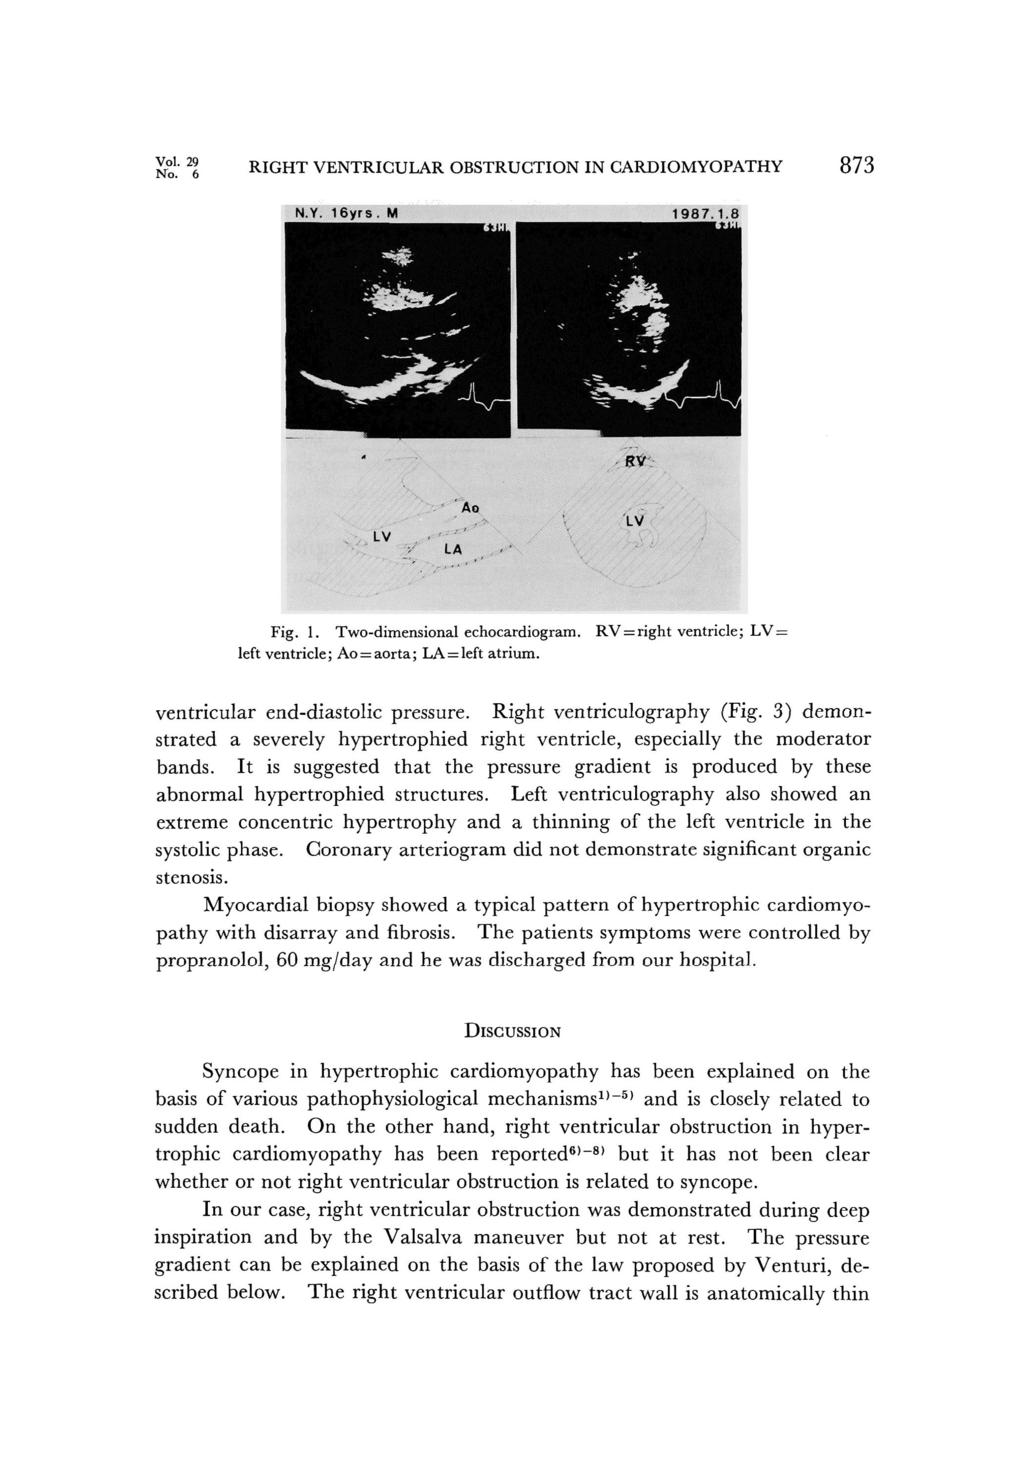 Vol.29 No.6 RIGHT VENTRICULAR OBSTRUCTION IN CARDIOMYOPATHY 873 Fig.1. Two-dimensional echocardiogram. RV=right ventricle; LV= left ventricle; Ao =aorta; LA=left atrium.